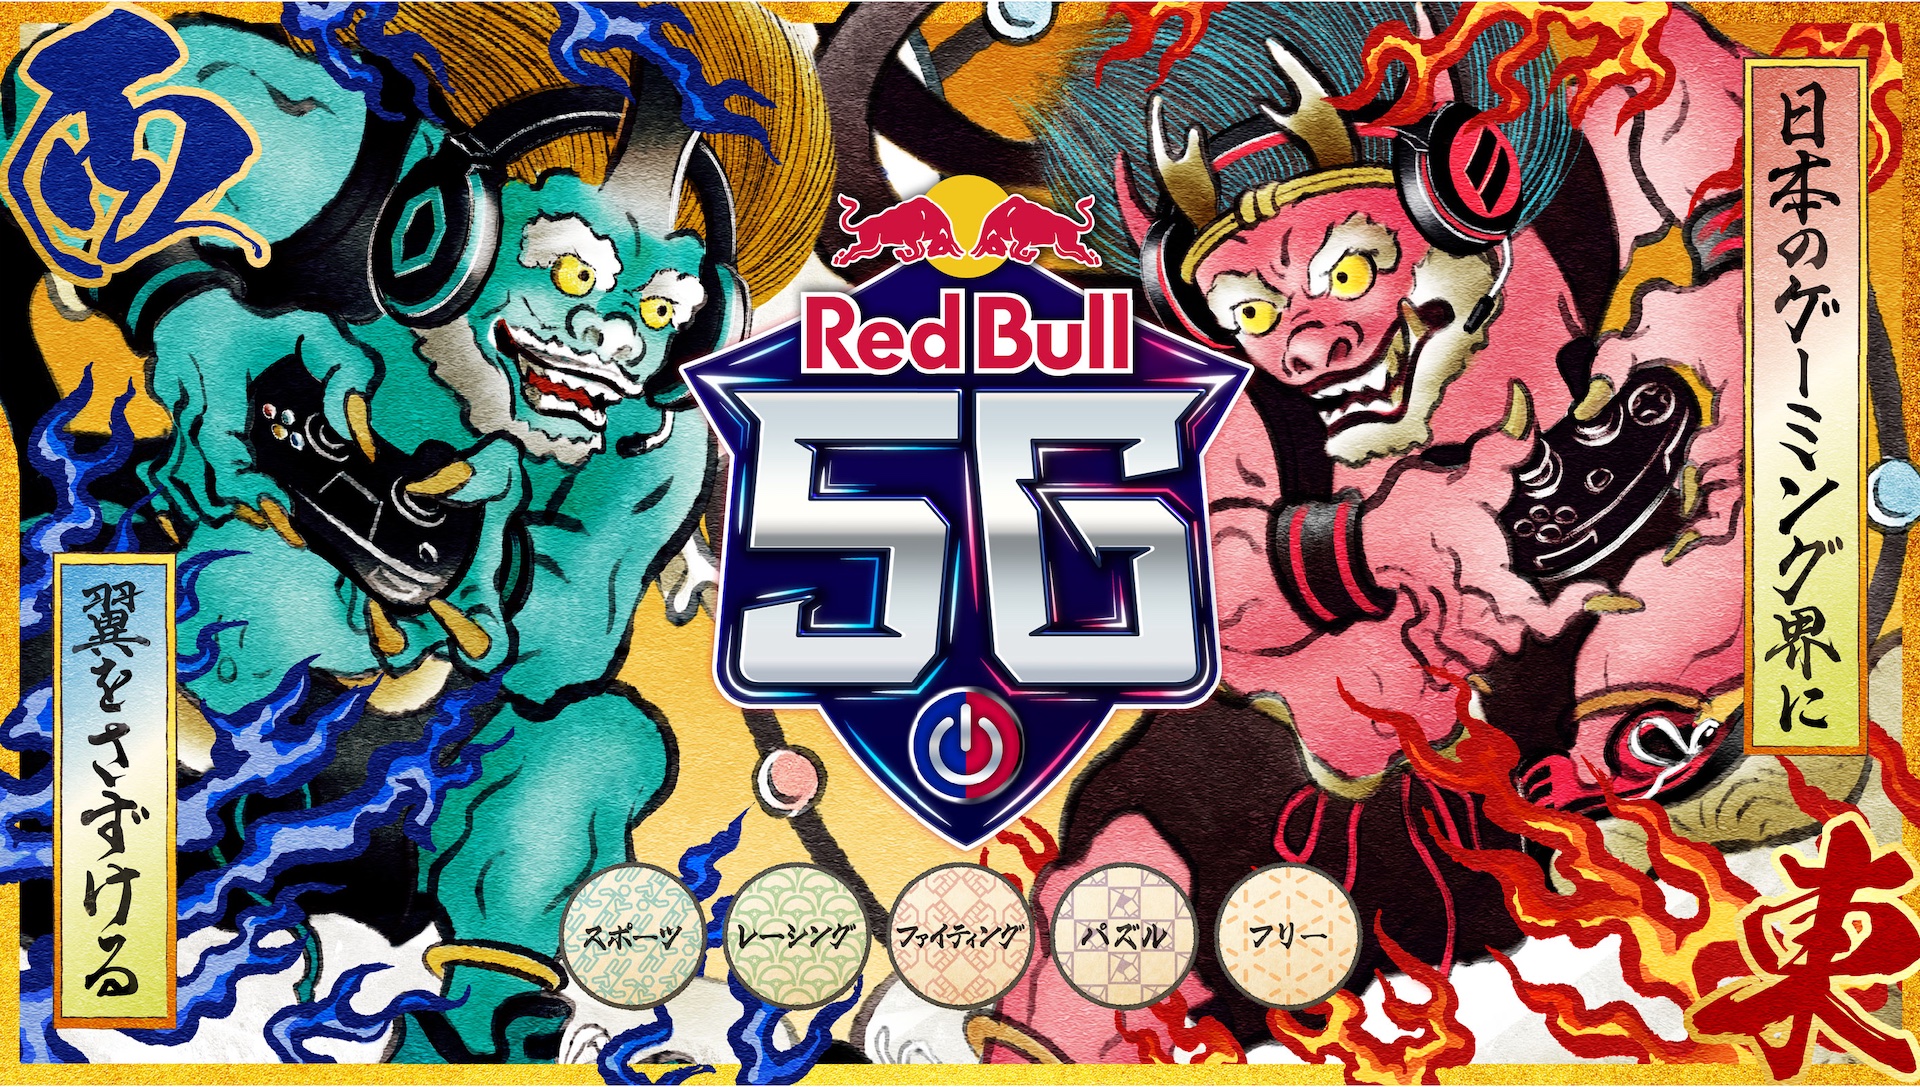 レッドブル Eスポーツイベント Red Bull 5g が5年ぶりに開催決定 Game Watch